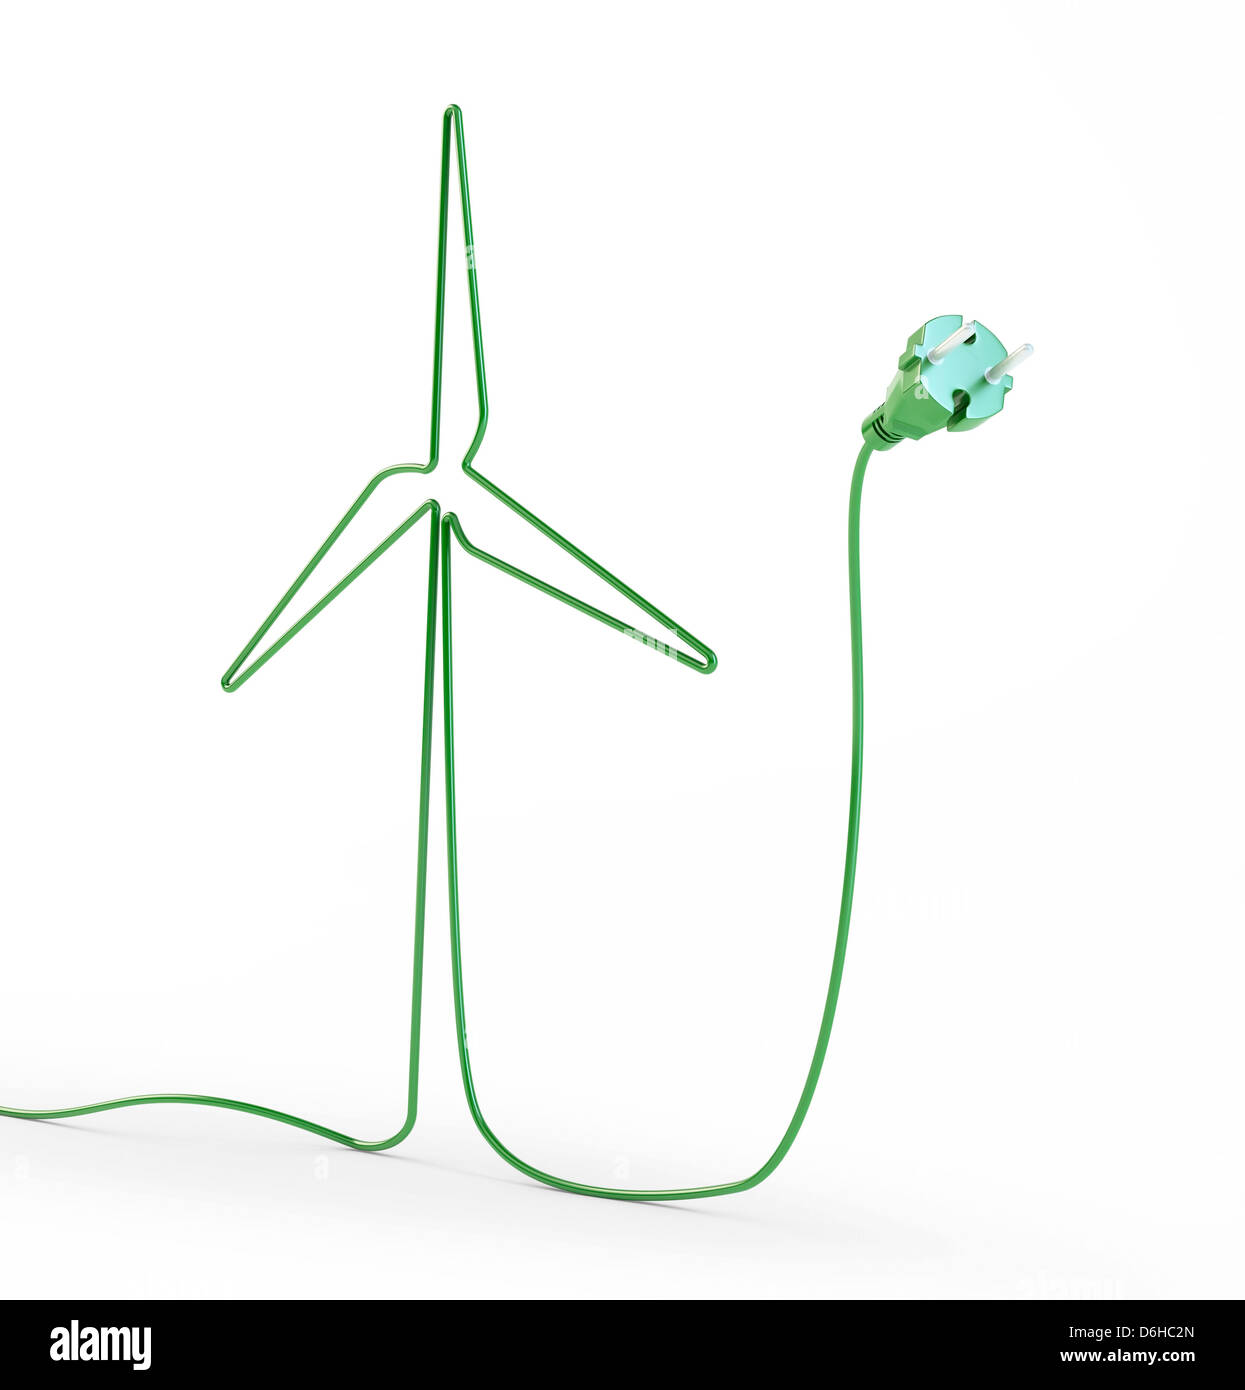 L'énergie verte, conceptual artwork Banque D'Images